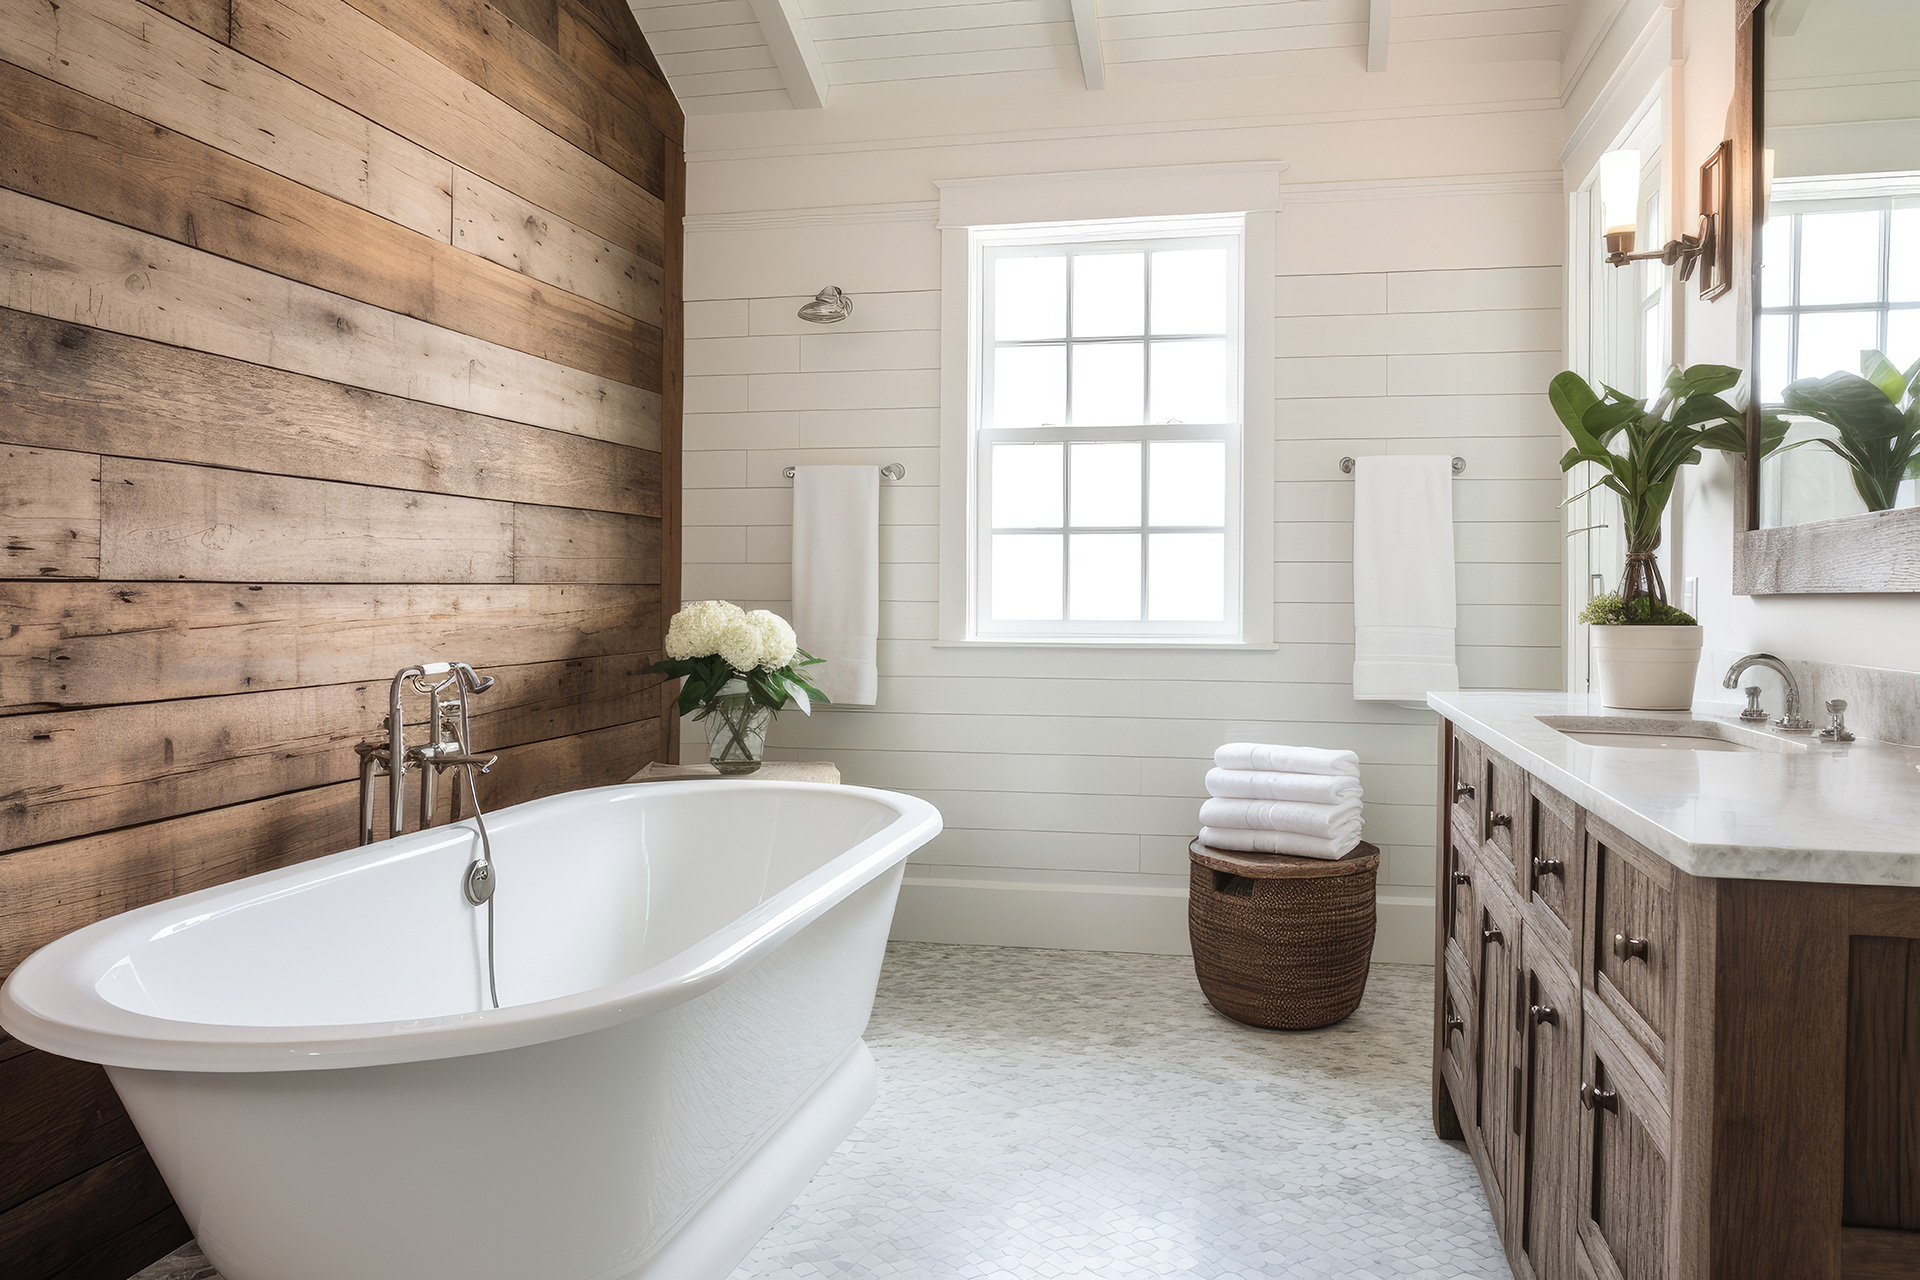 custom farm house style bathroom with old style porcelain sink and bathtub